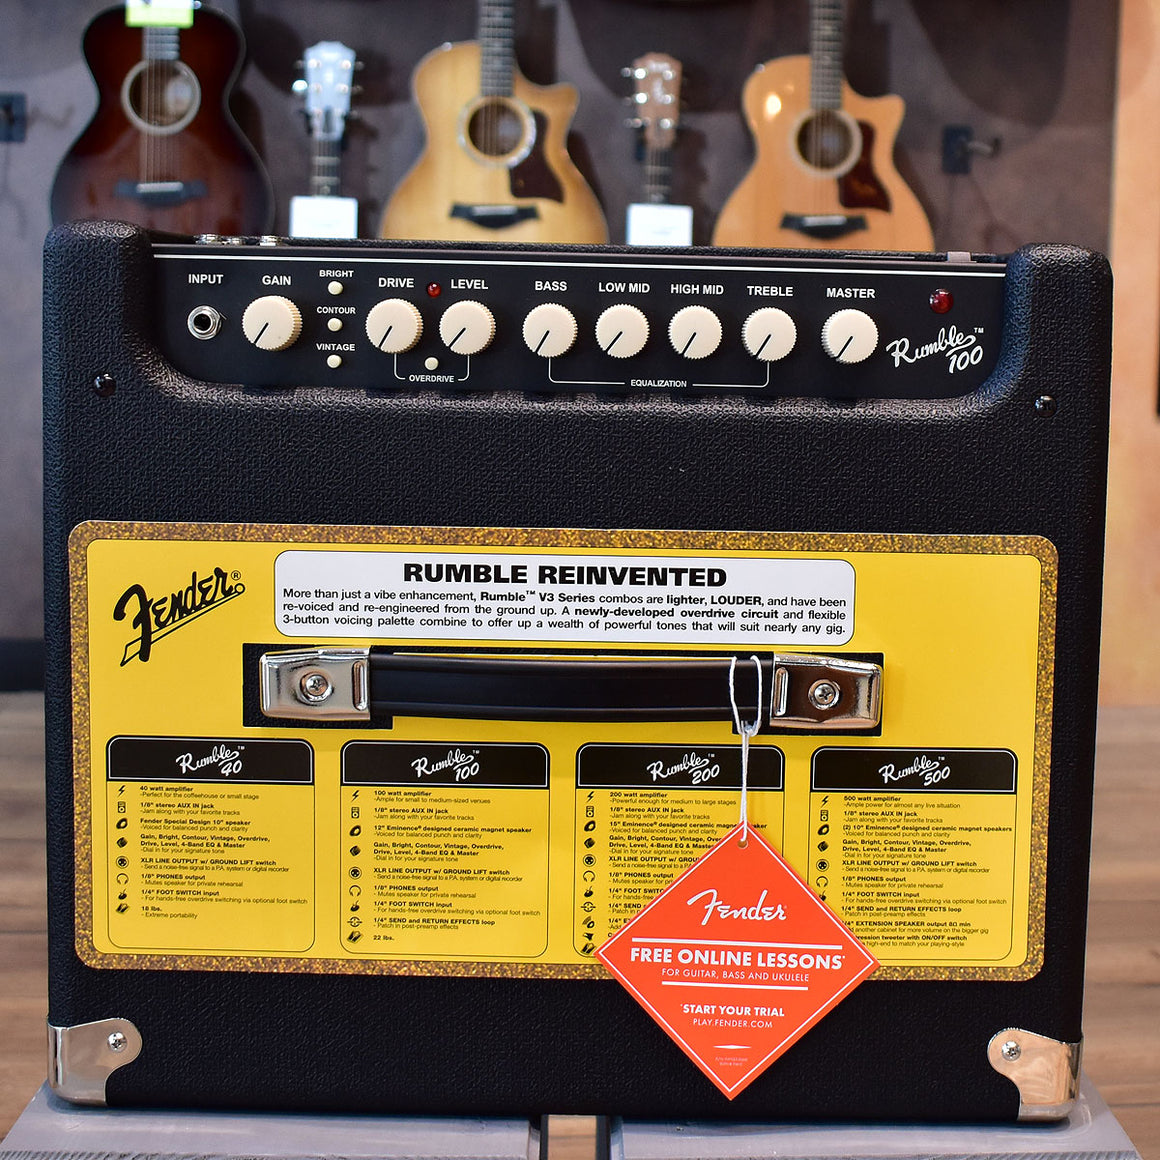 Fender Rumble 100 V3 Bass Amplifier